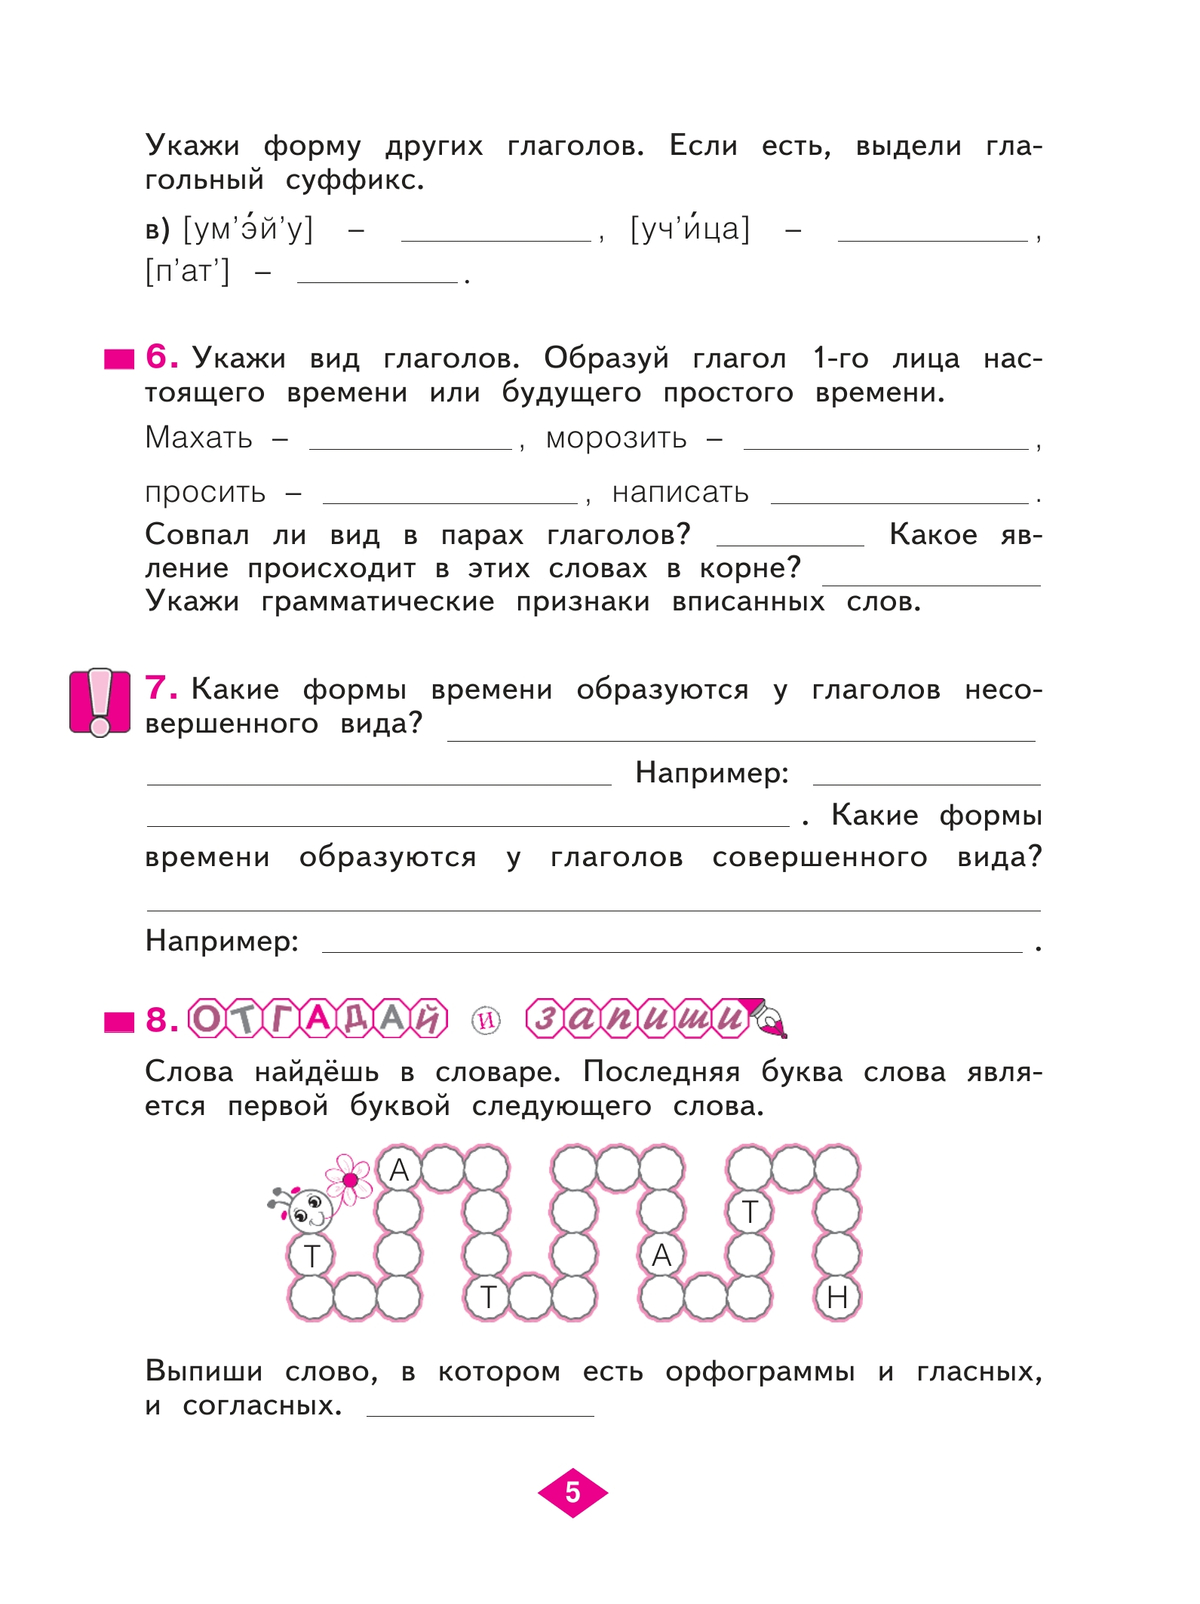 Русский язык. Рабочая тетрадь. 4 класс. В 4-х частях. Часть 3 4